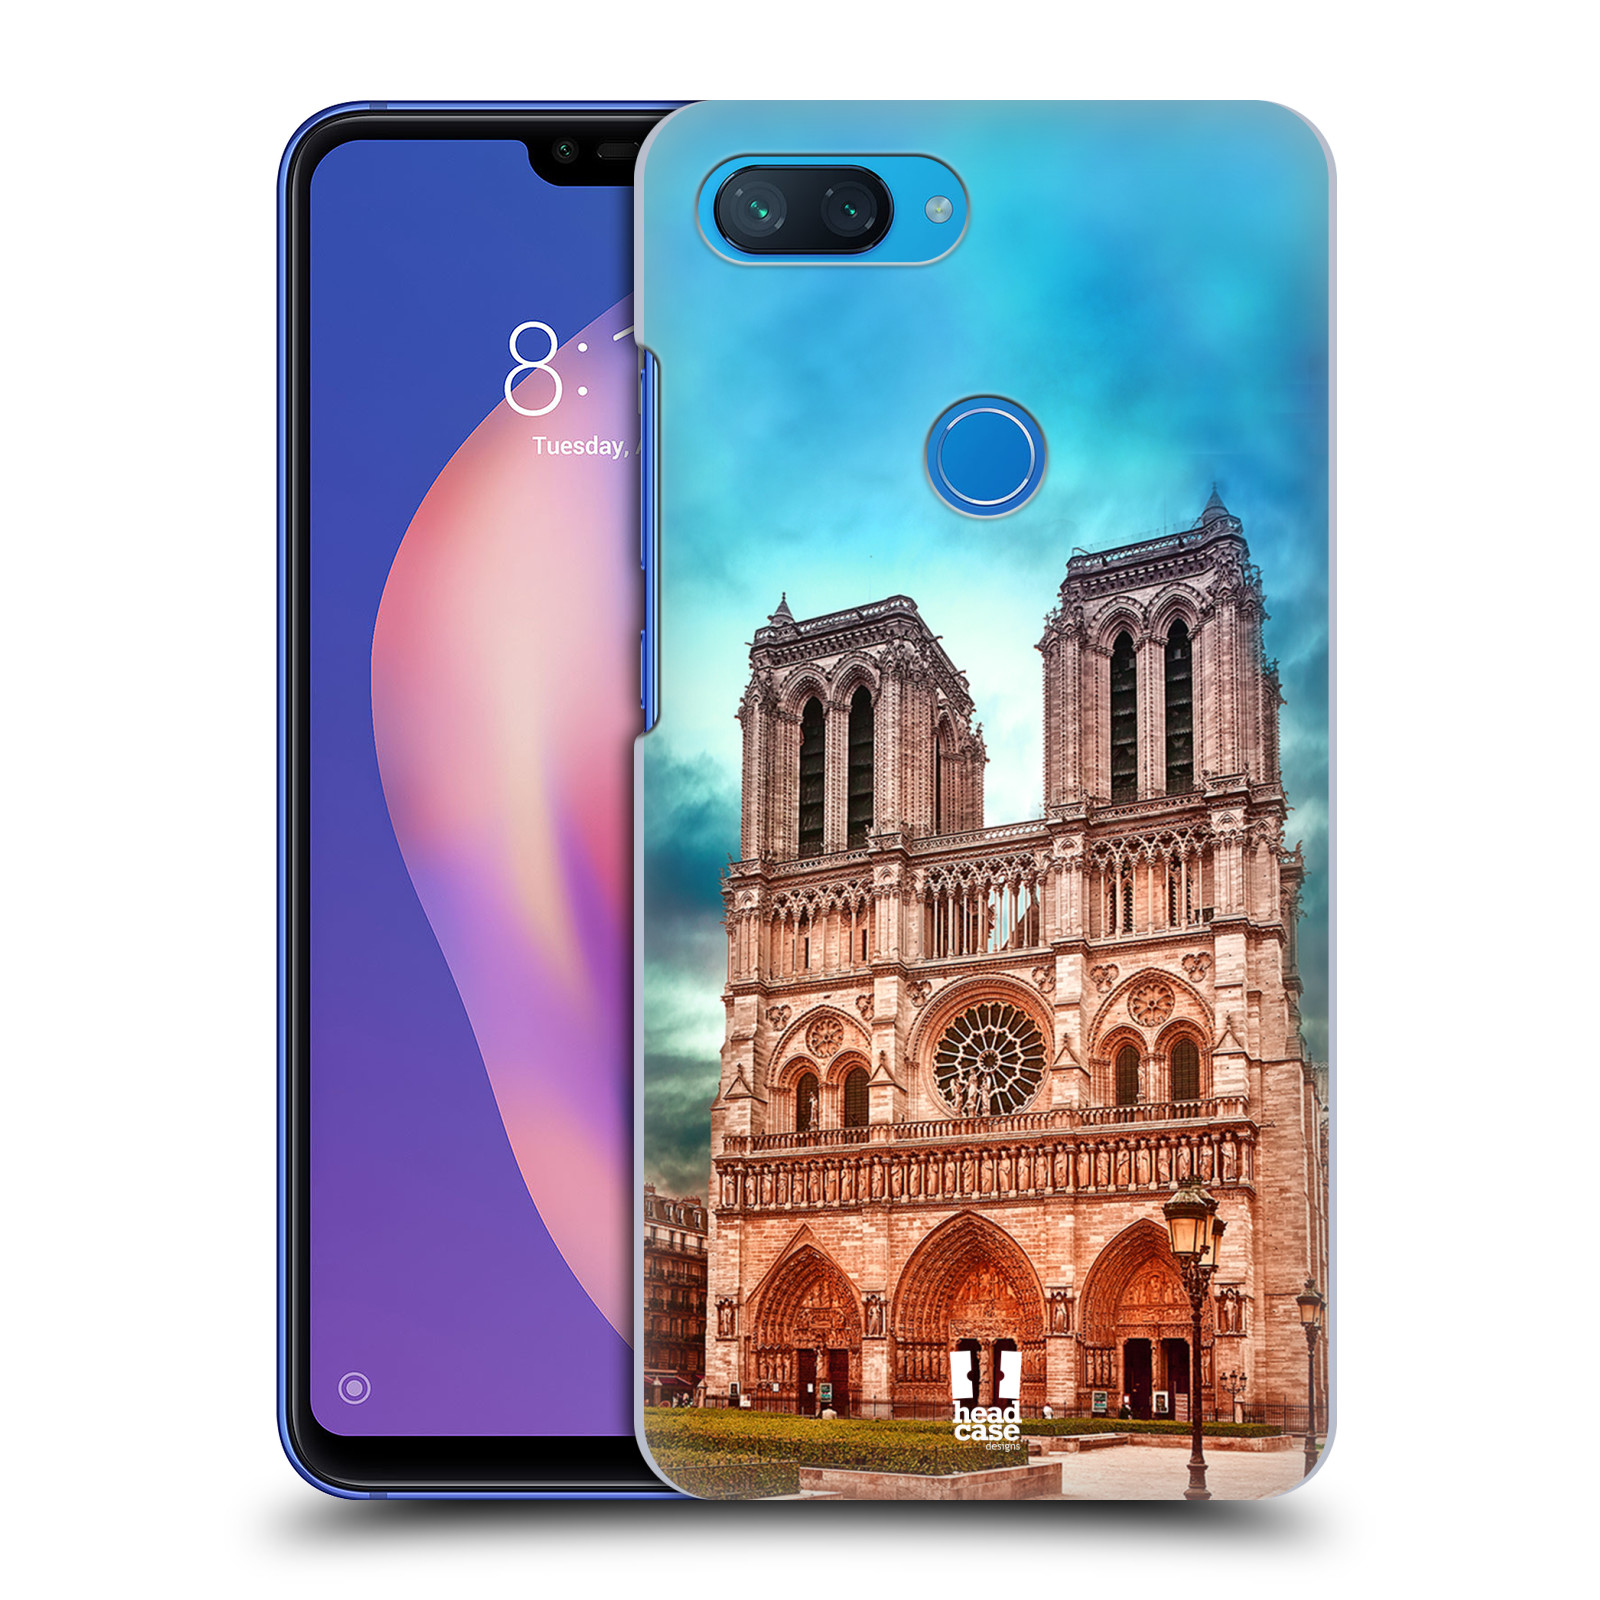 Pouzdro na mobil Xiaomi  Mi 8 Lite - HEAD CASE - historická místa katedrála Notre Dame